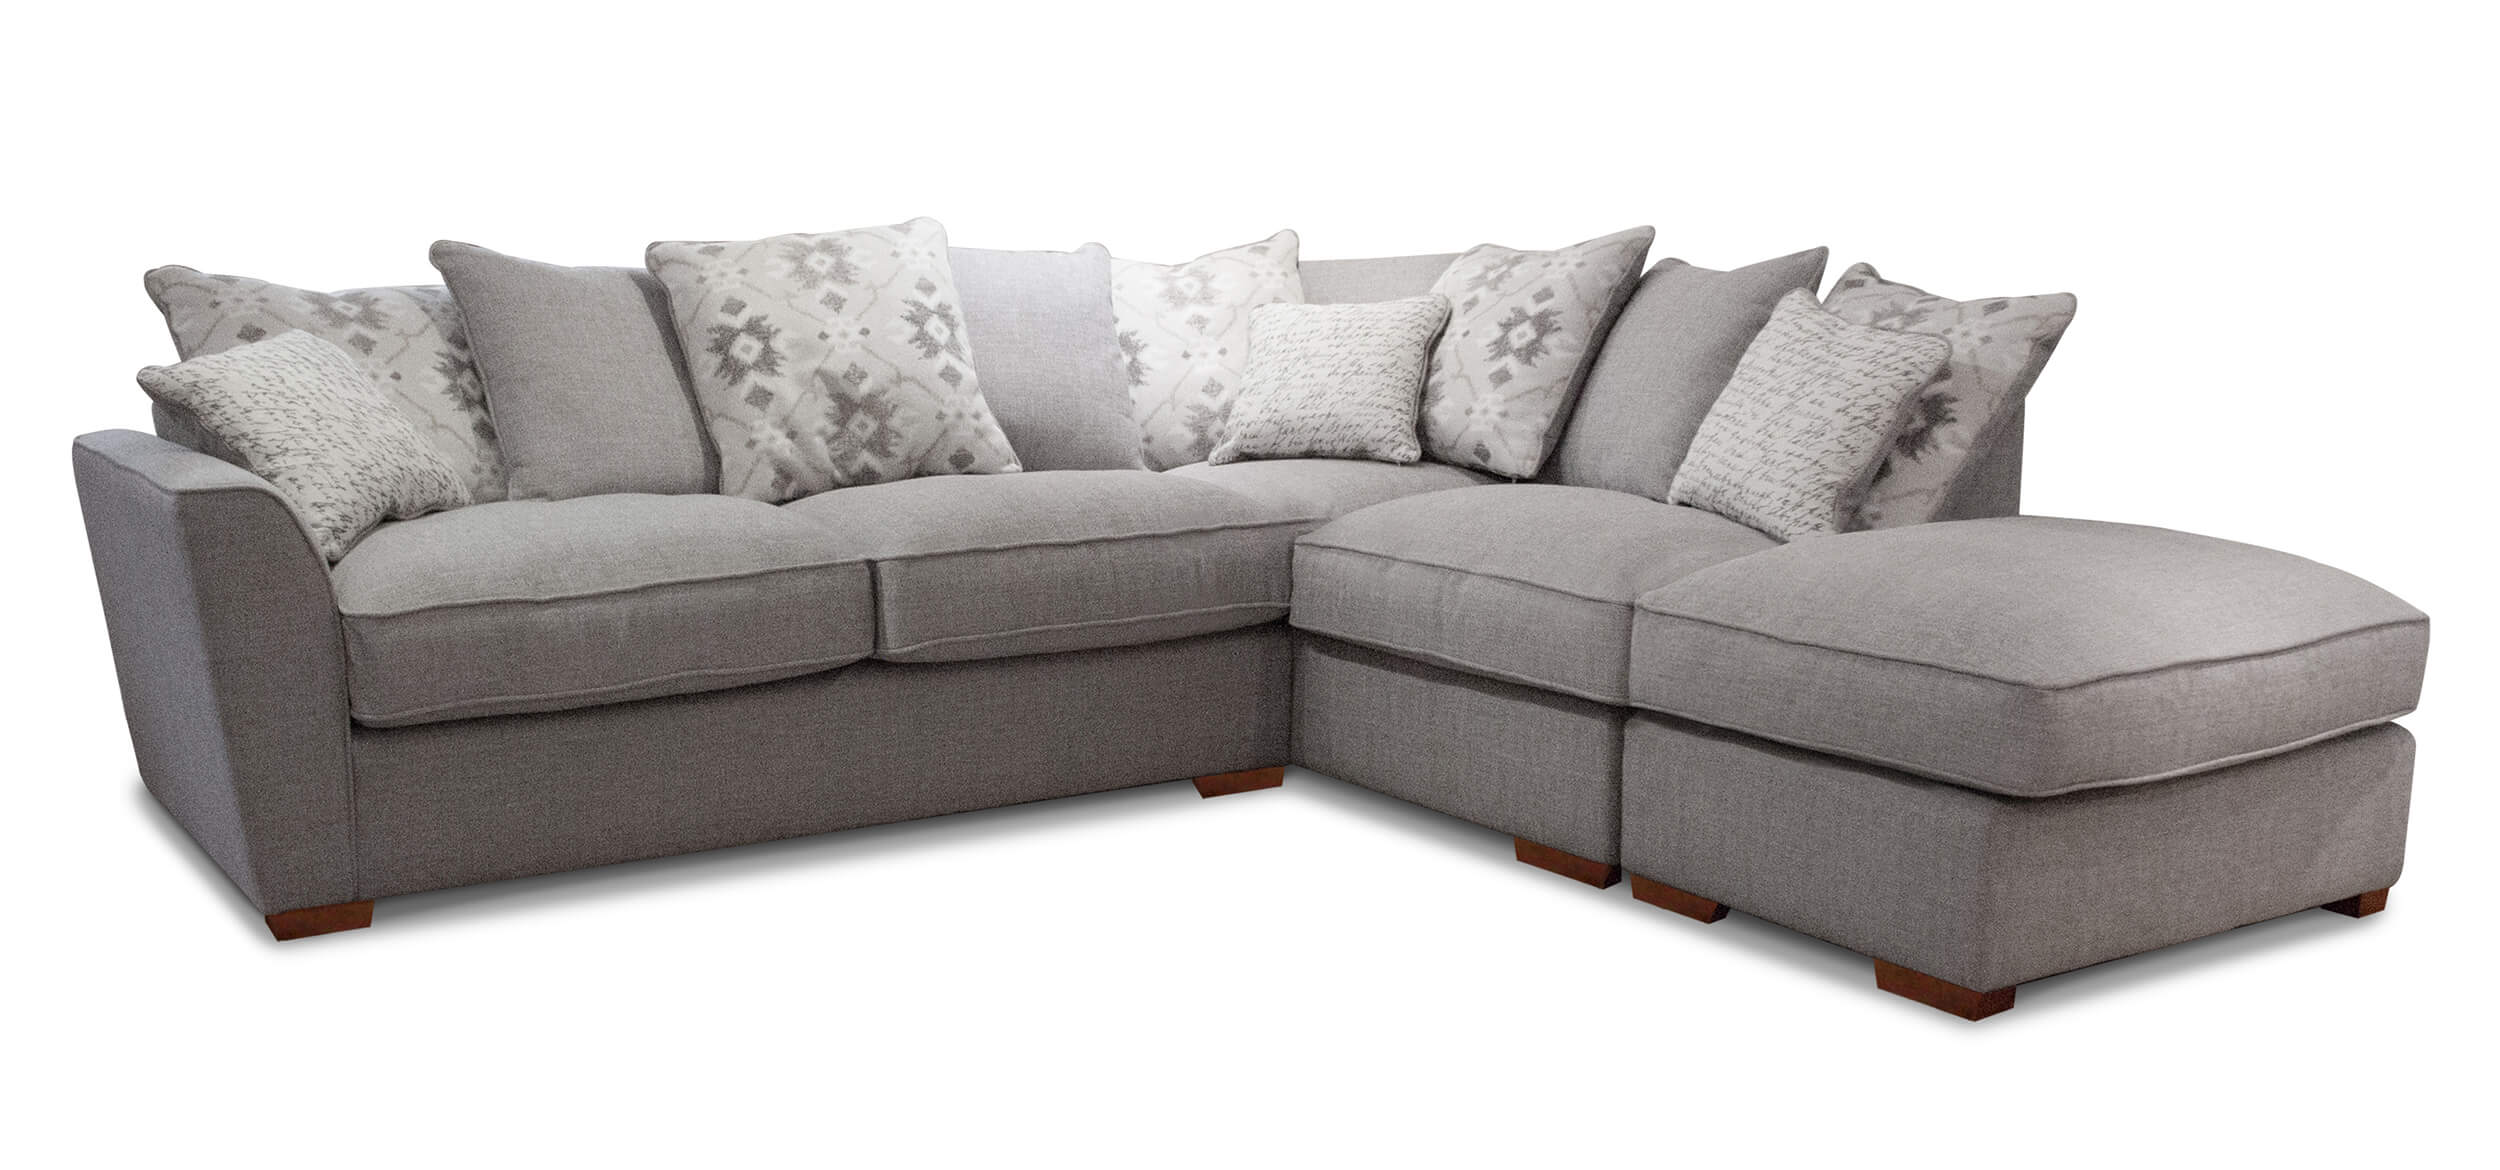 Showing image for Washington corner sofa - large